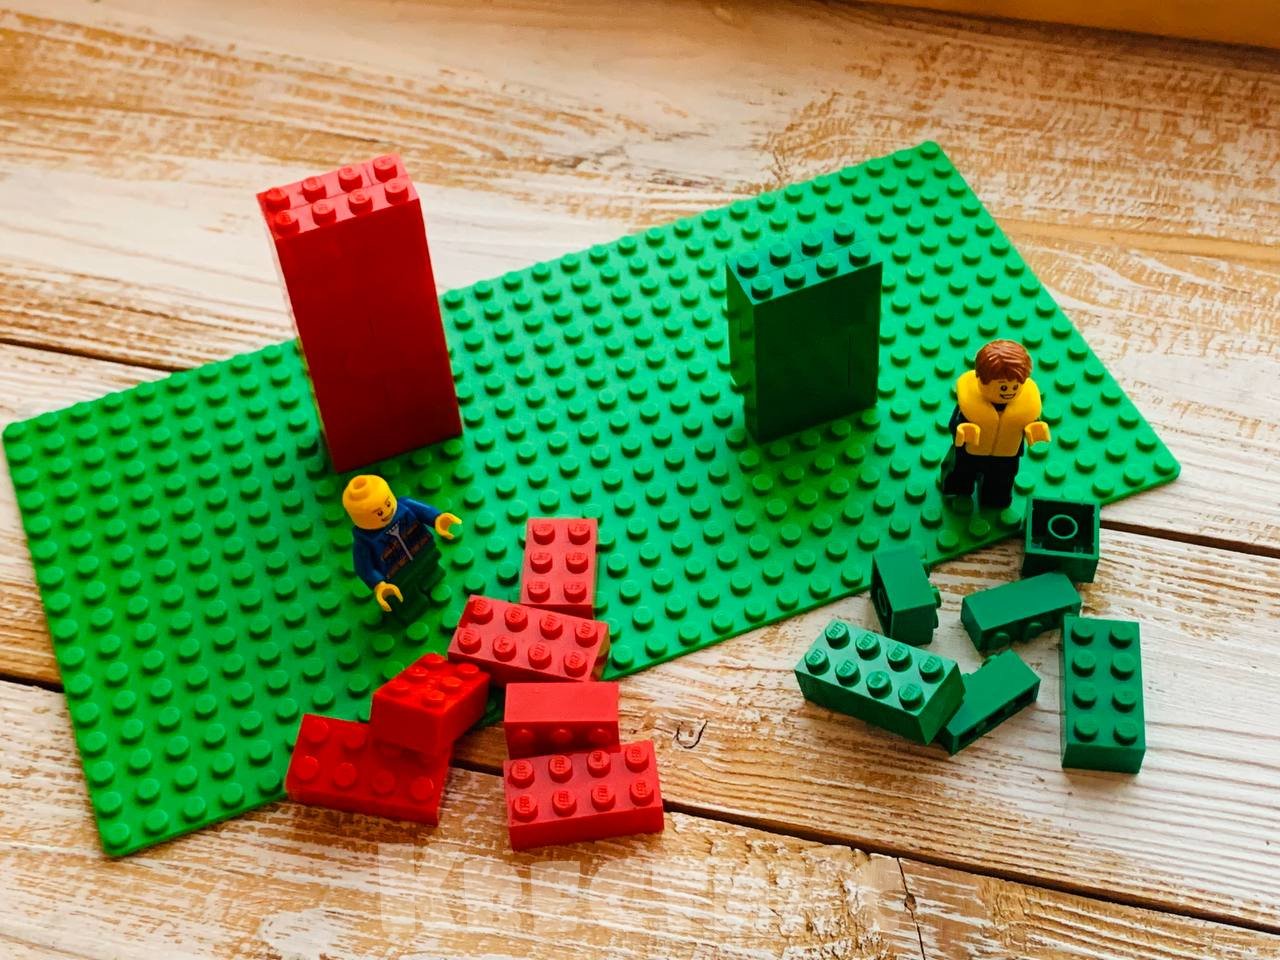 ЛЕГО Фортнайт (LEGO Fortnite): советы, гайды, улучшить верстак, пещеры, транспорт, помощь